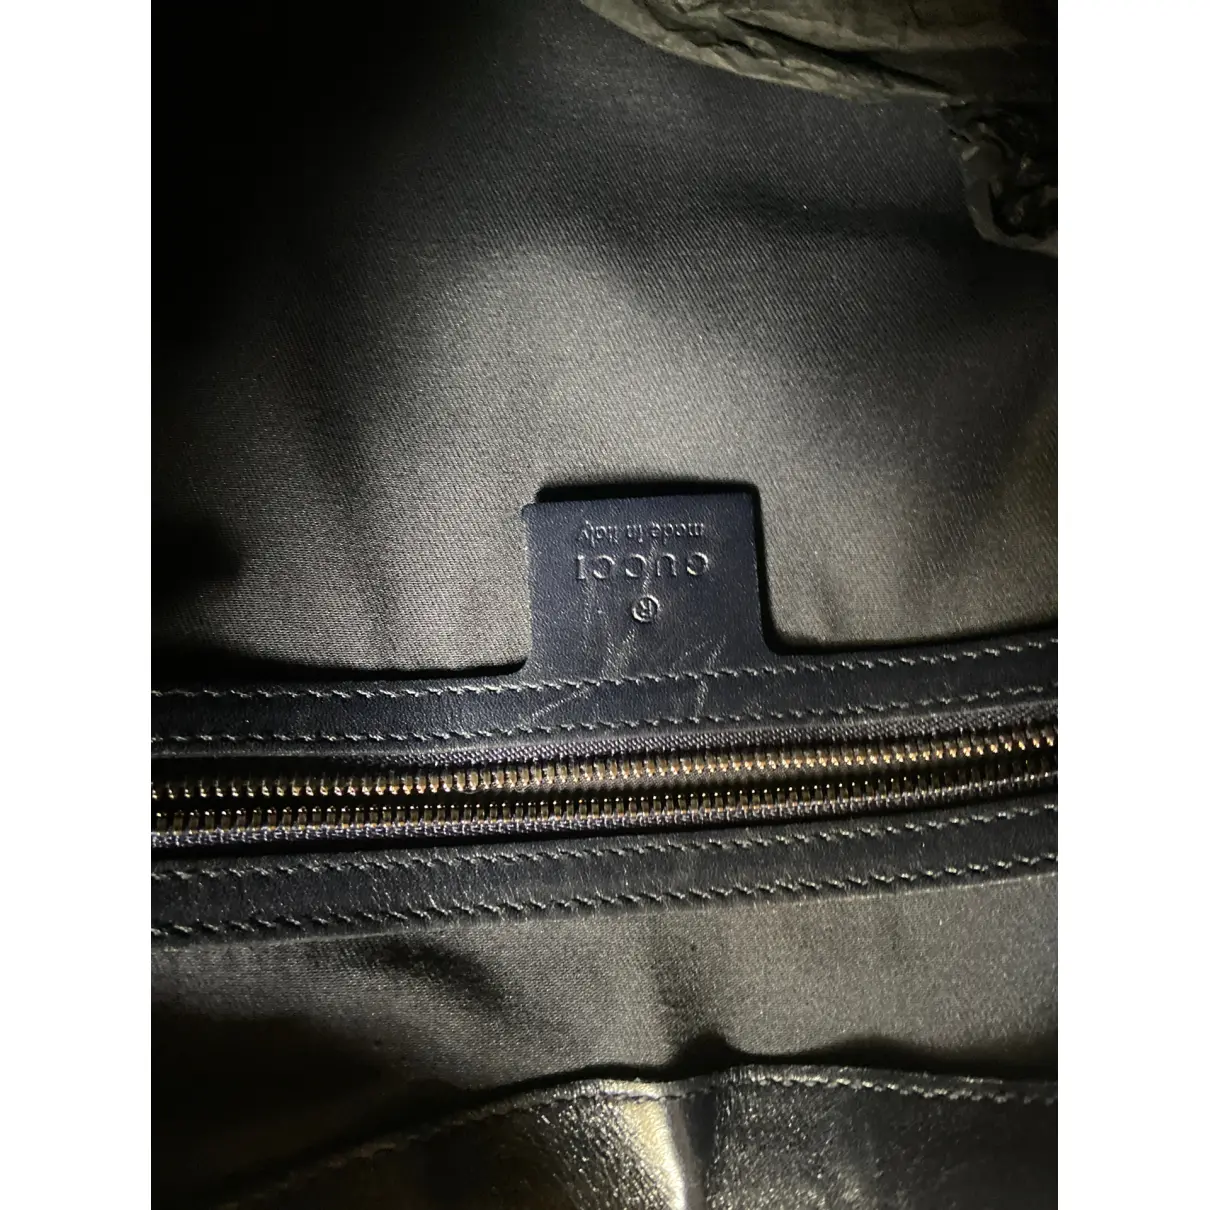 Buy Gucci Hobo leather handbag online